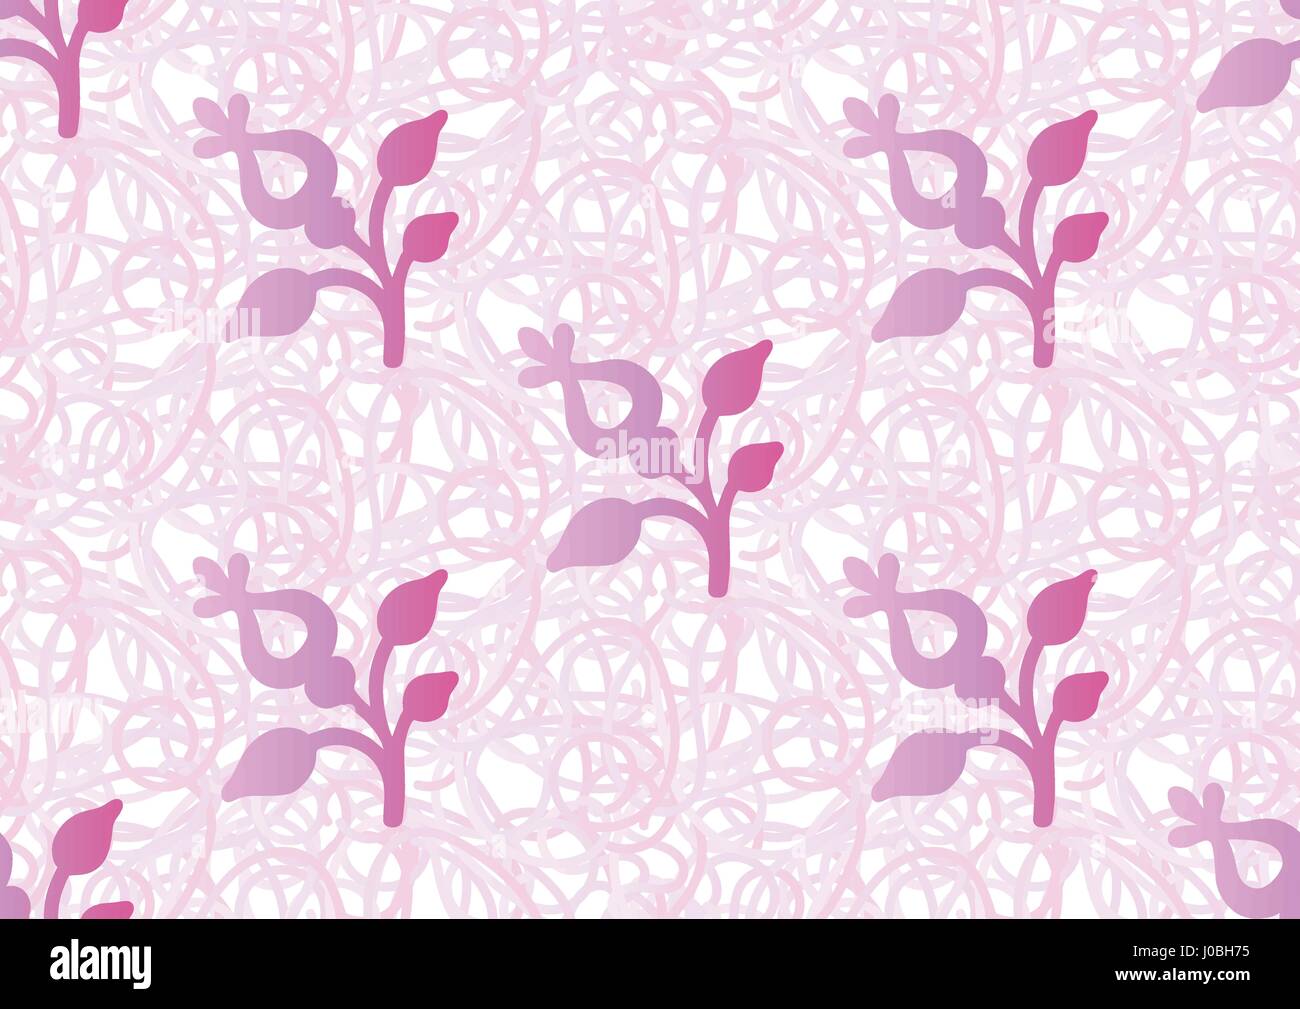 Profil de transparente vecteur motif floral stylisé, de nombreuses petites fleurs, trous, taches sur fond blanc. Petites fleurs violettes dessiné à la main. Flore transparente Illustration de Vecteur